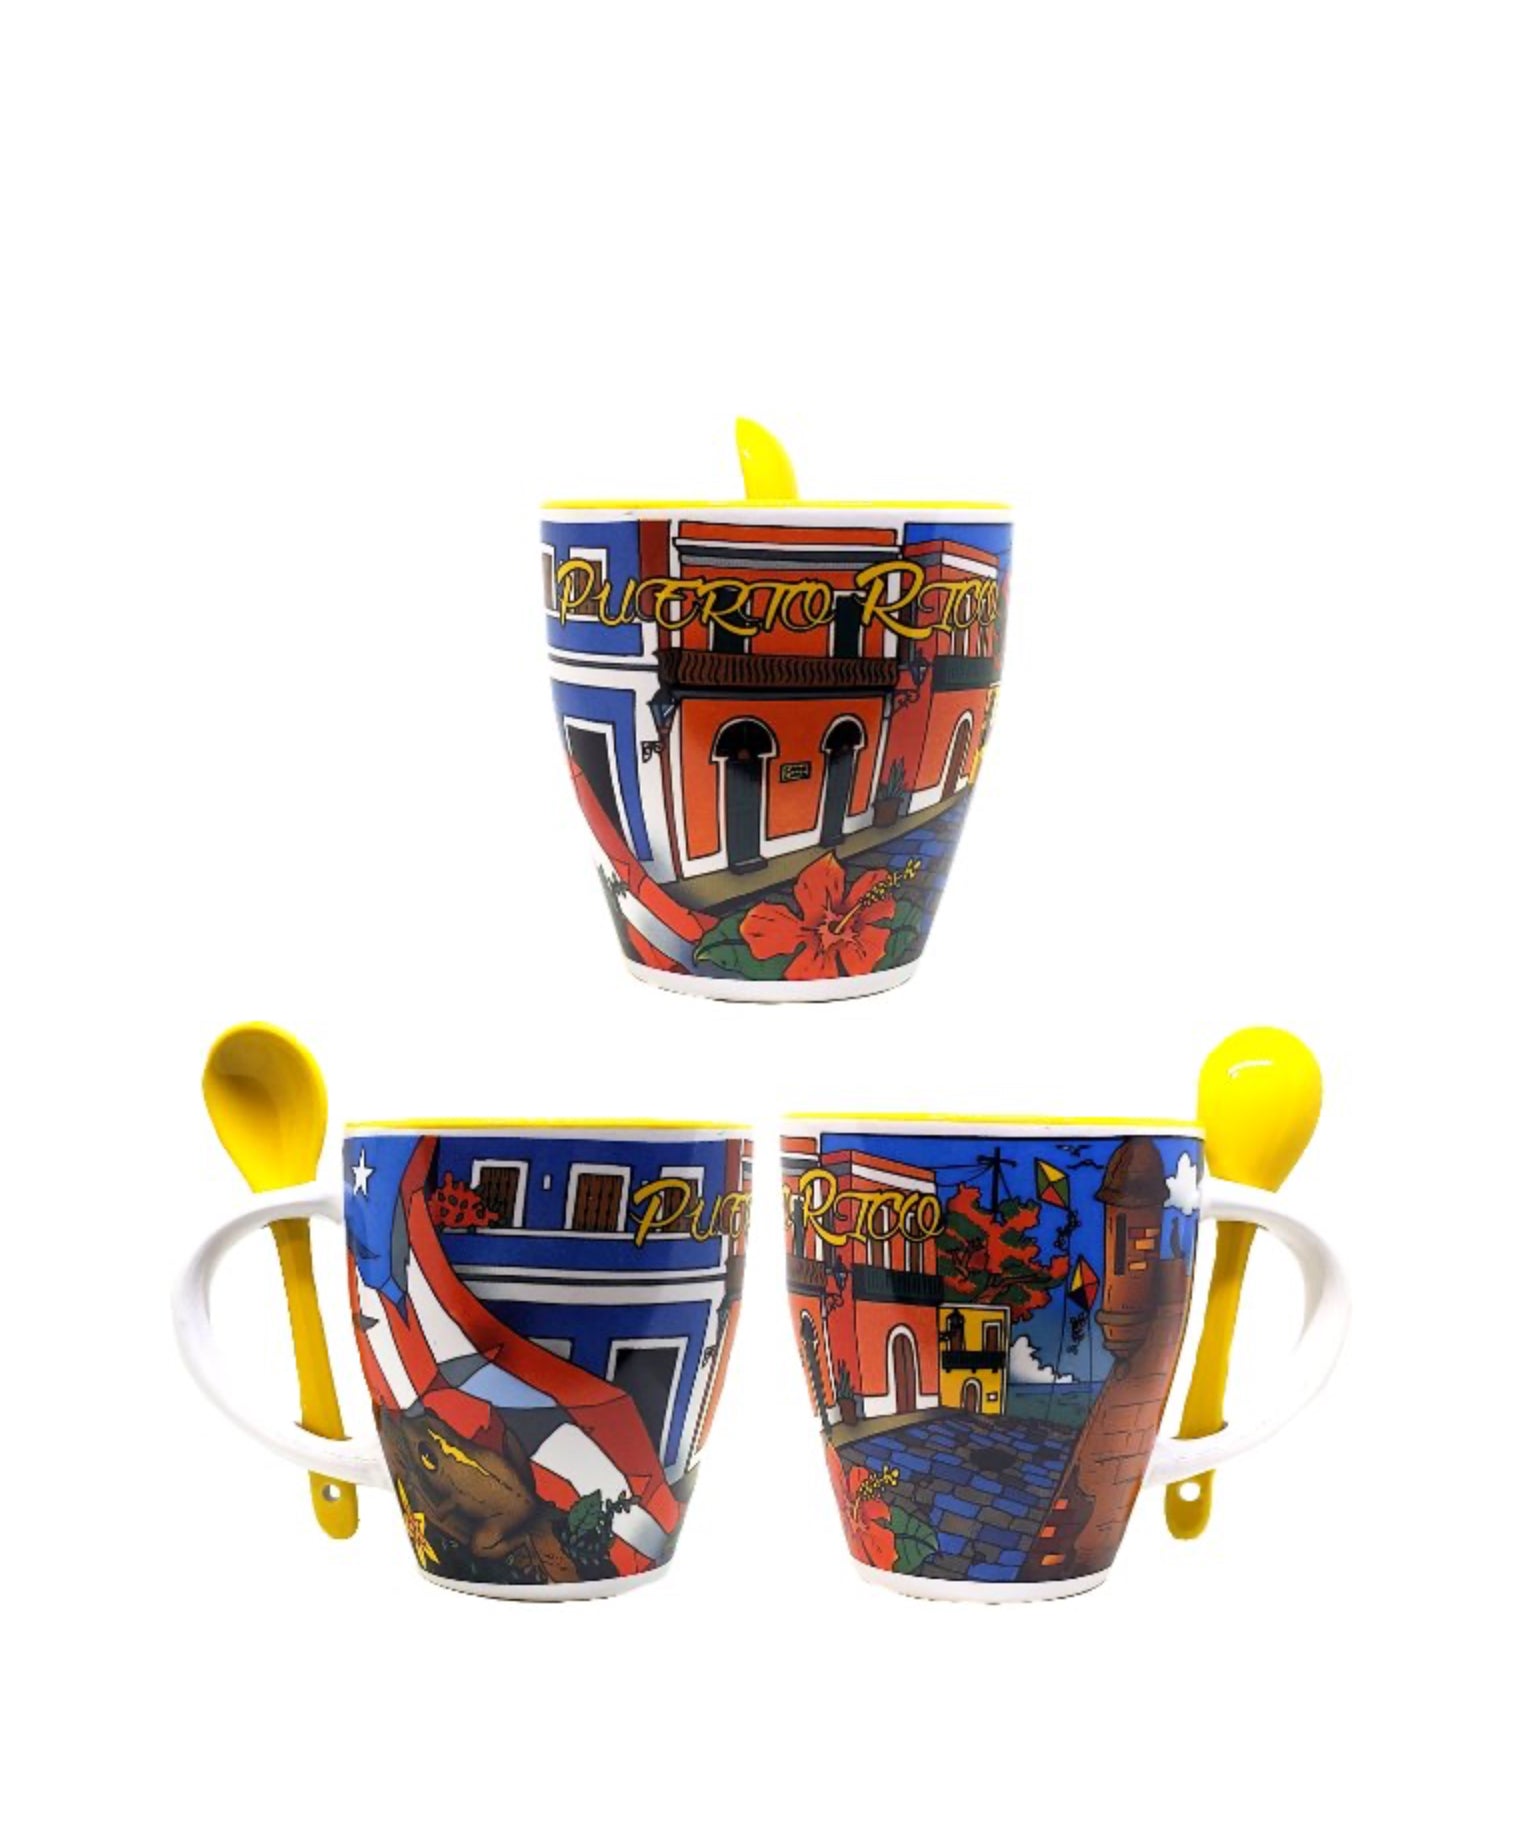 Puerto Rico Coffee Cup with Spoon Handel Ceramics Mug